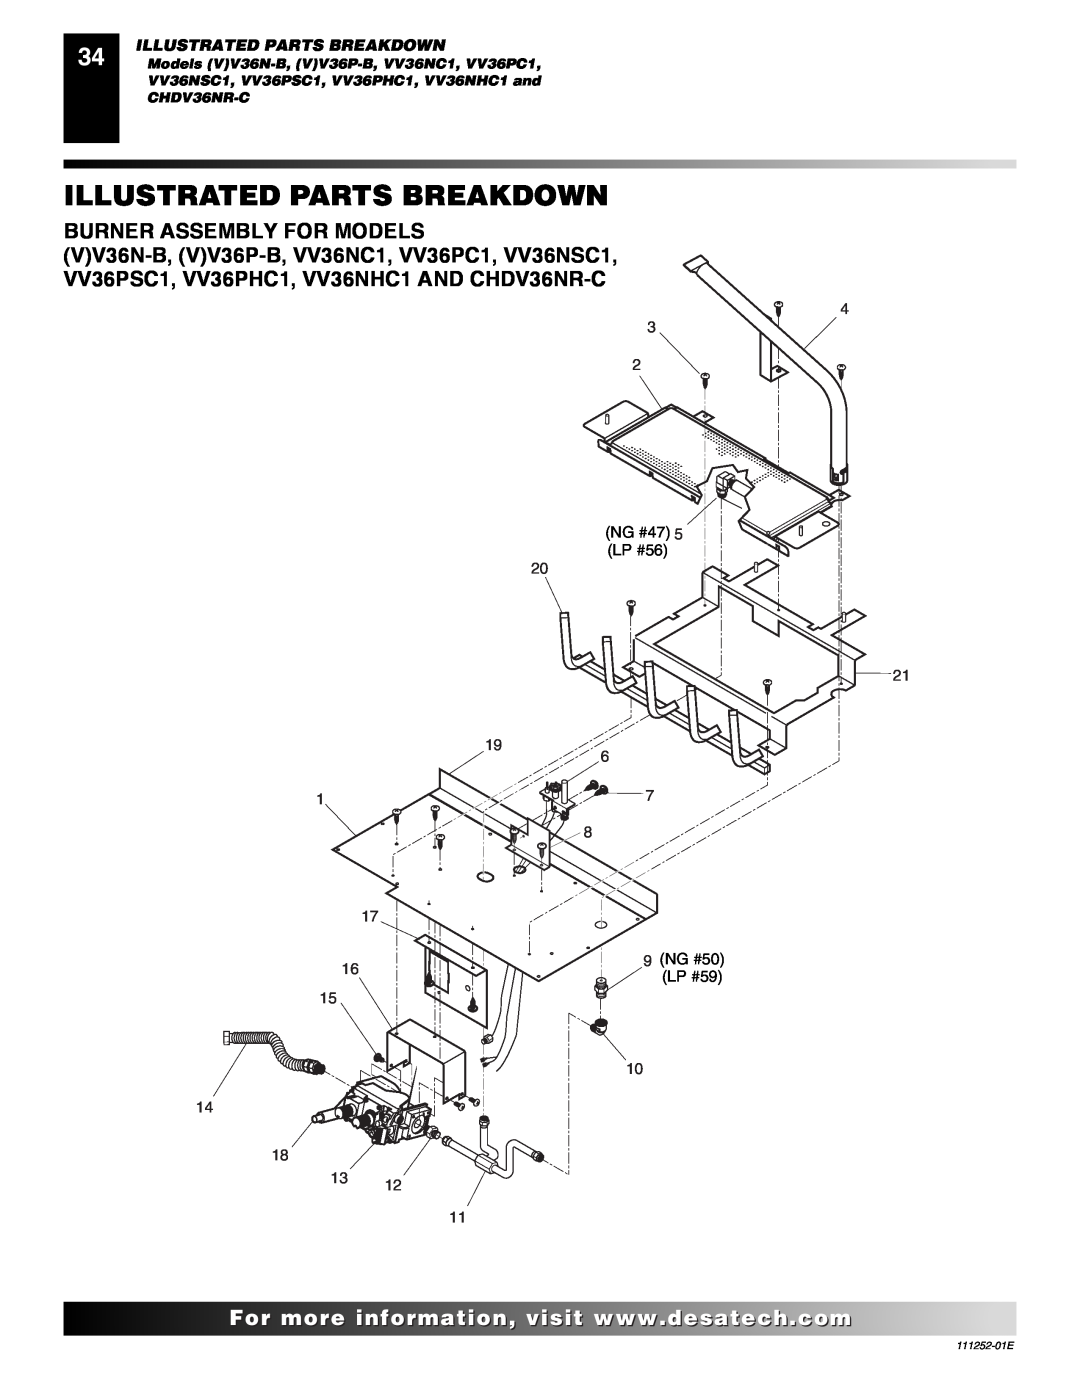 Desa (V)V36P-B SERIES, VV36PC1 SERIES Burner Assembly For Models, Illustrated Parts Breakdown, CHDV36NR-C, 111252-01E 